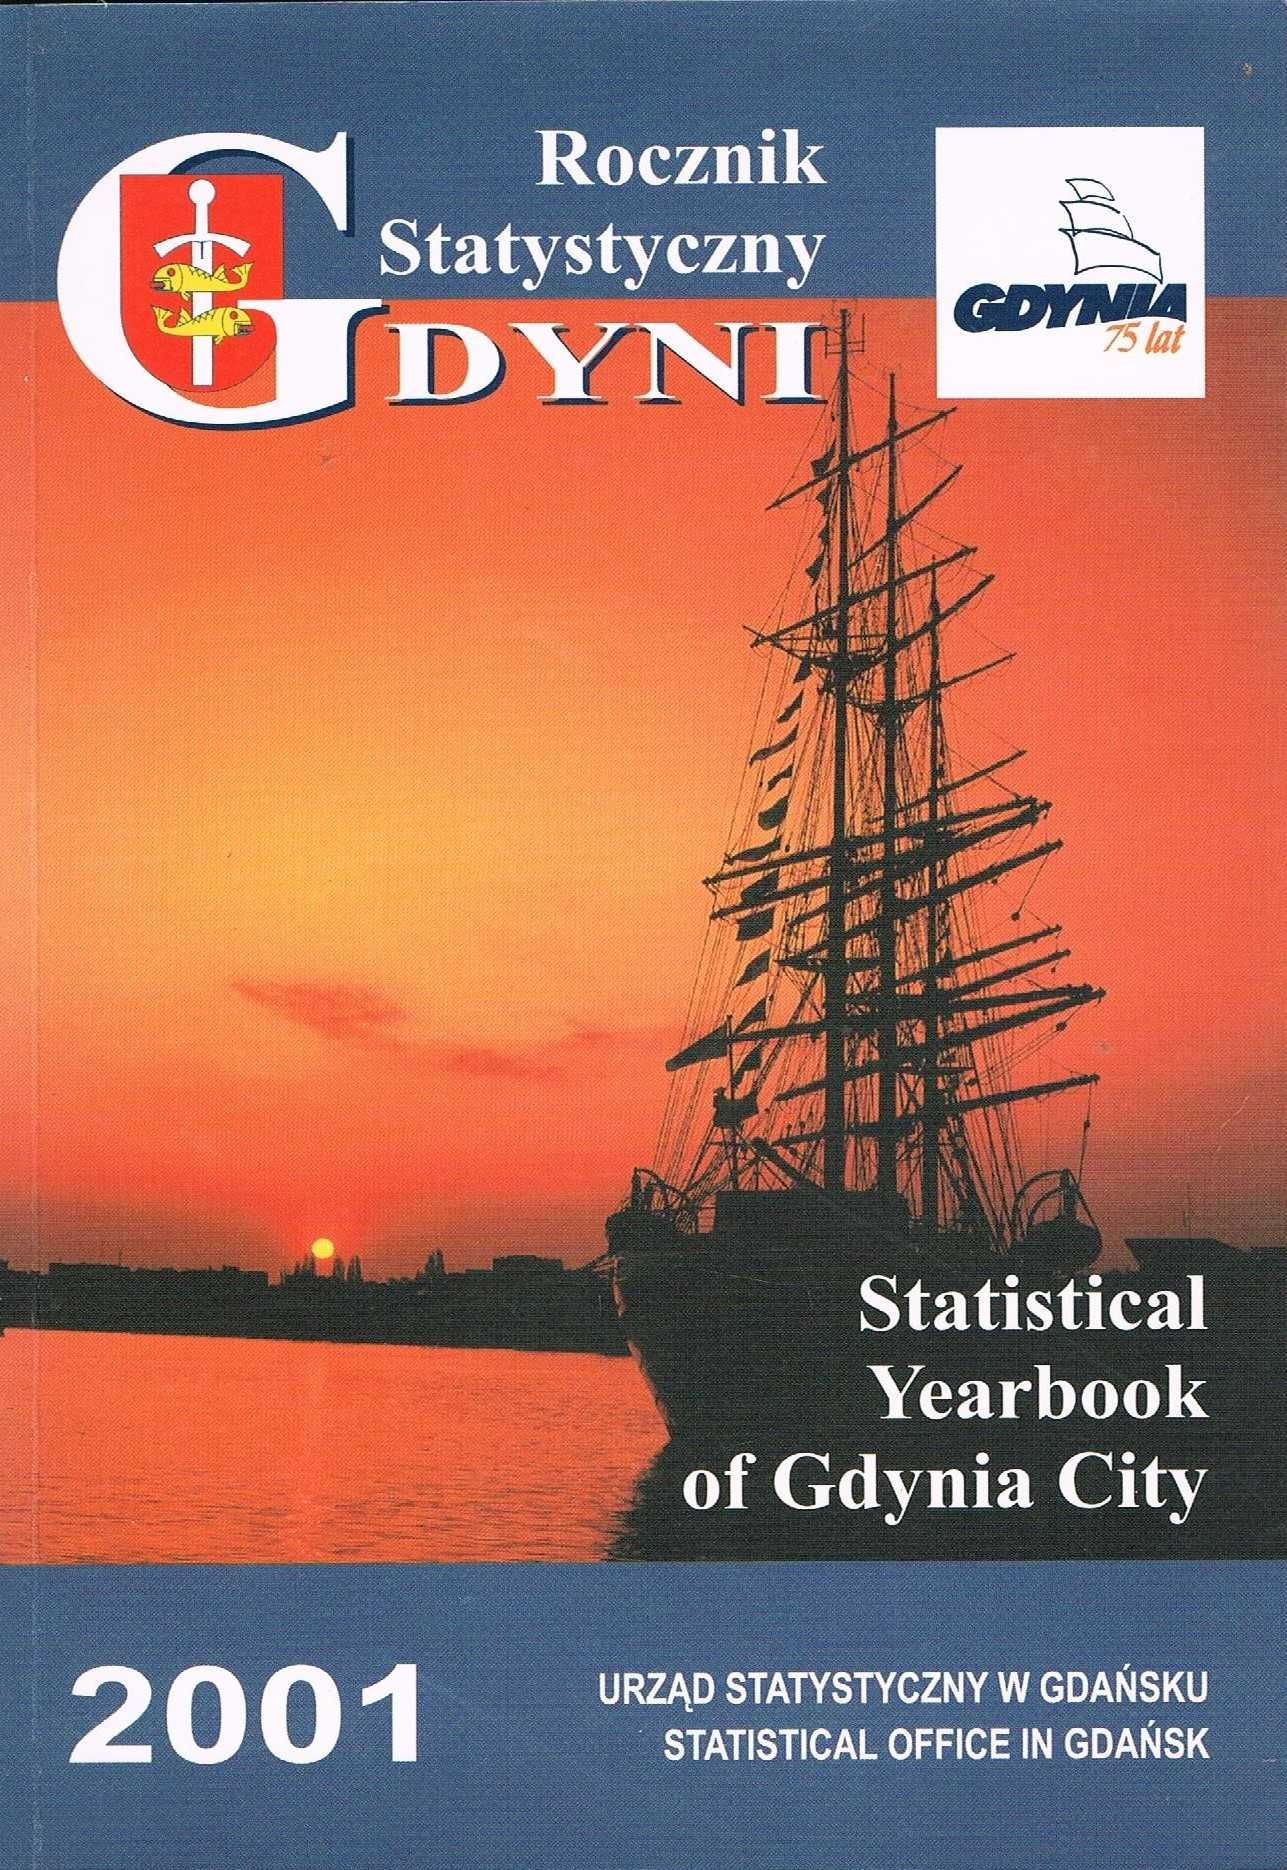 Rocznik Statystyczny Gdyni 2001